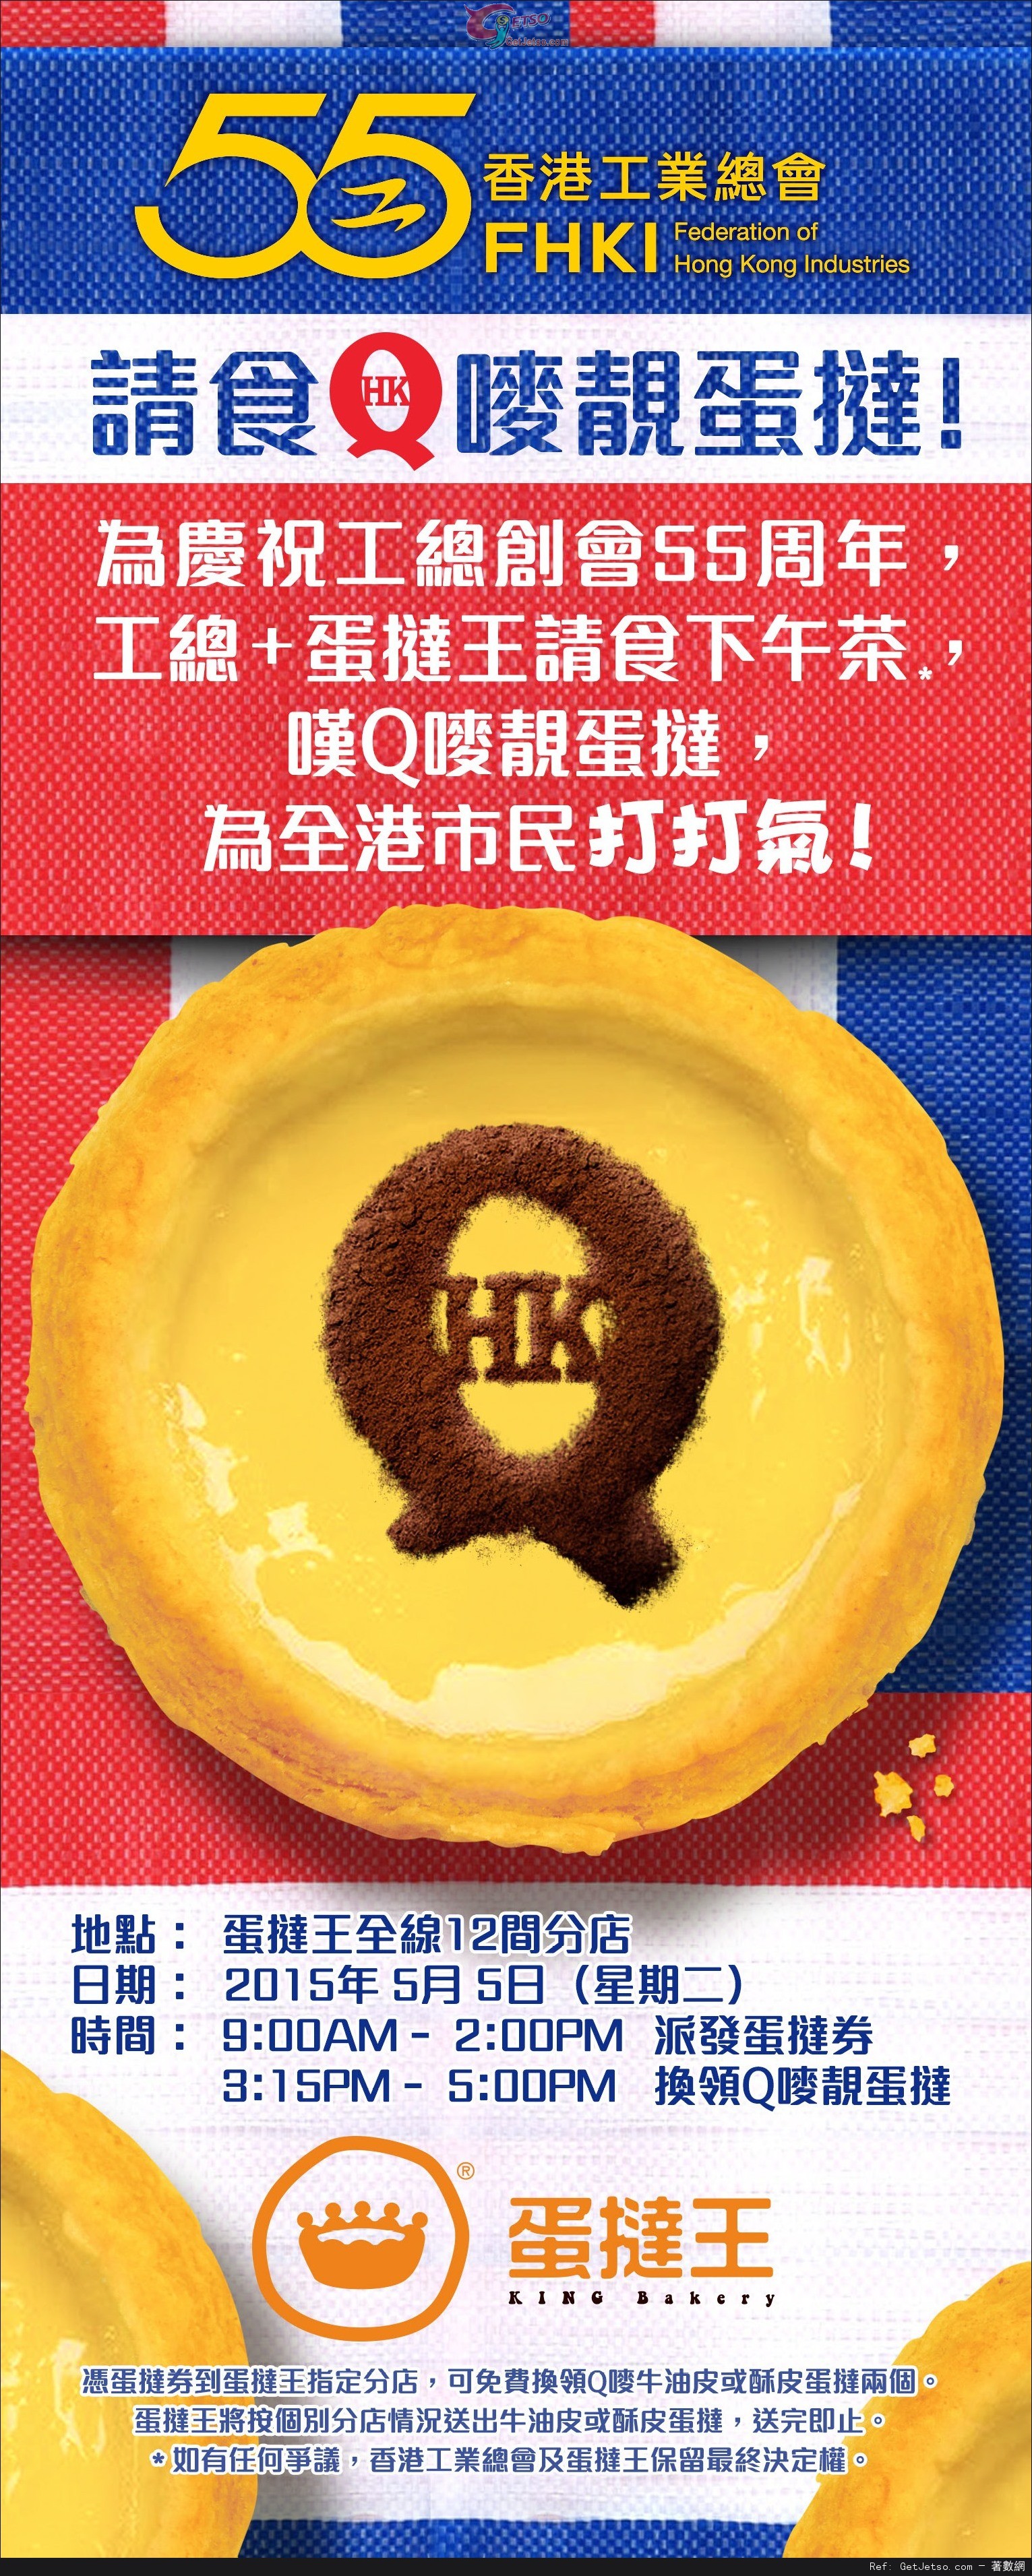 香港工業總會55週年+蛋撻皇免費派發蛋撻(15年5月5日)圖片1